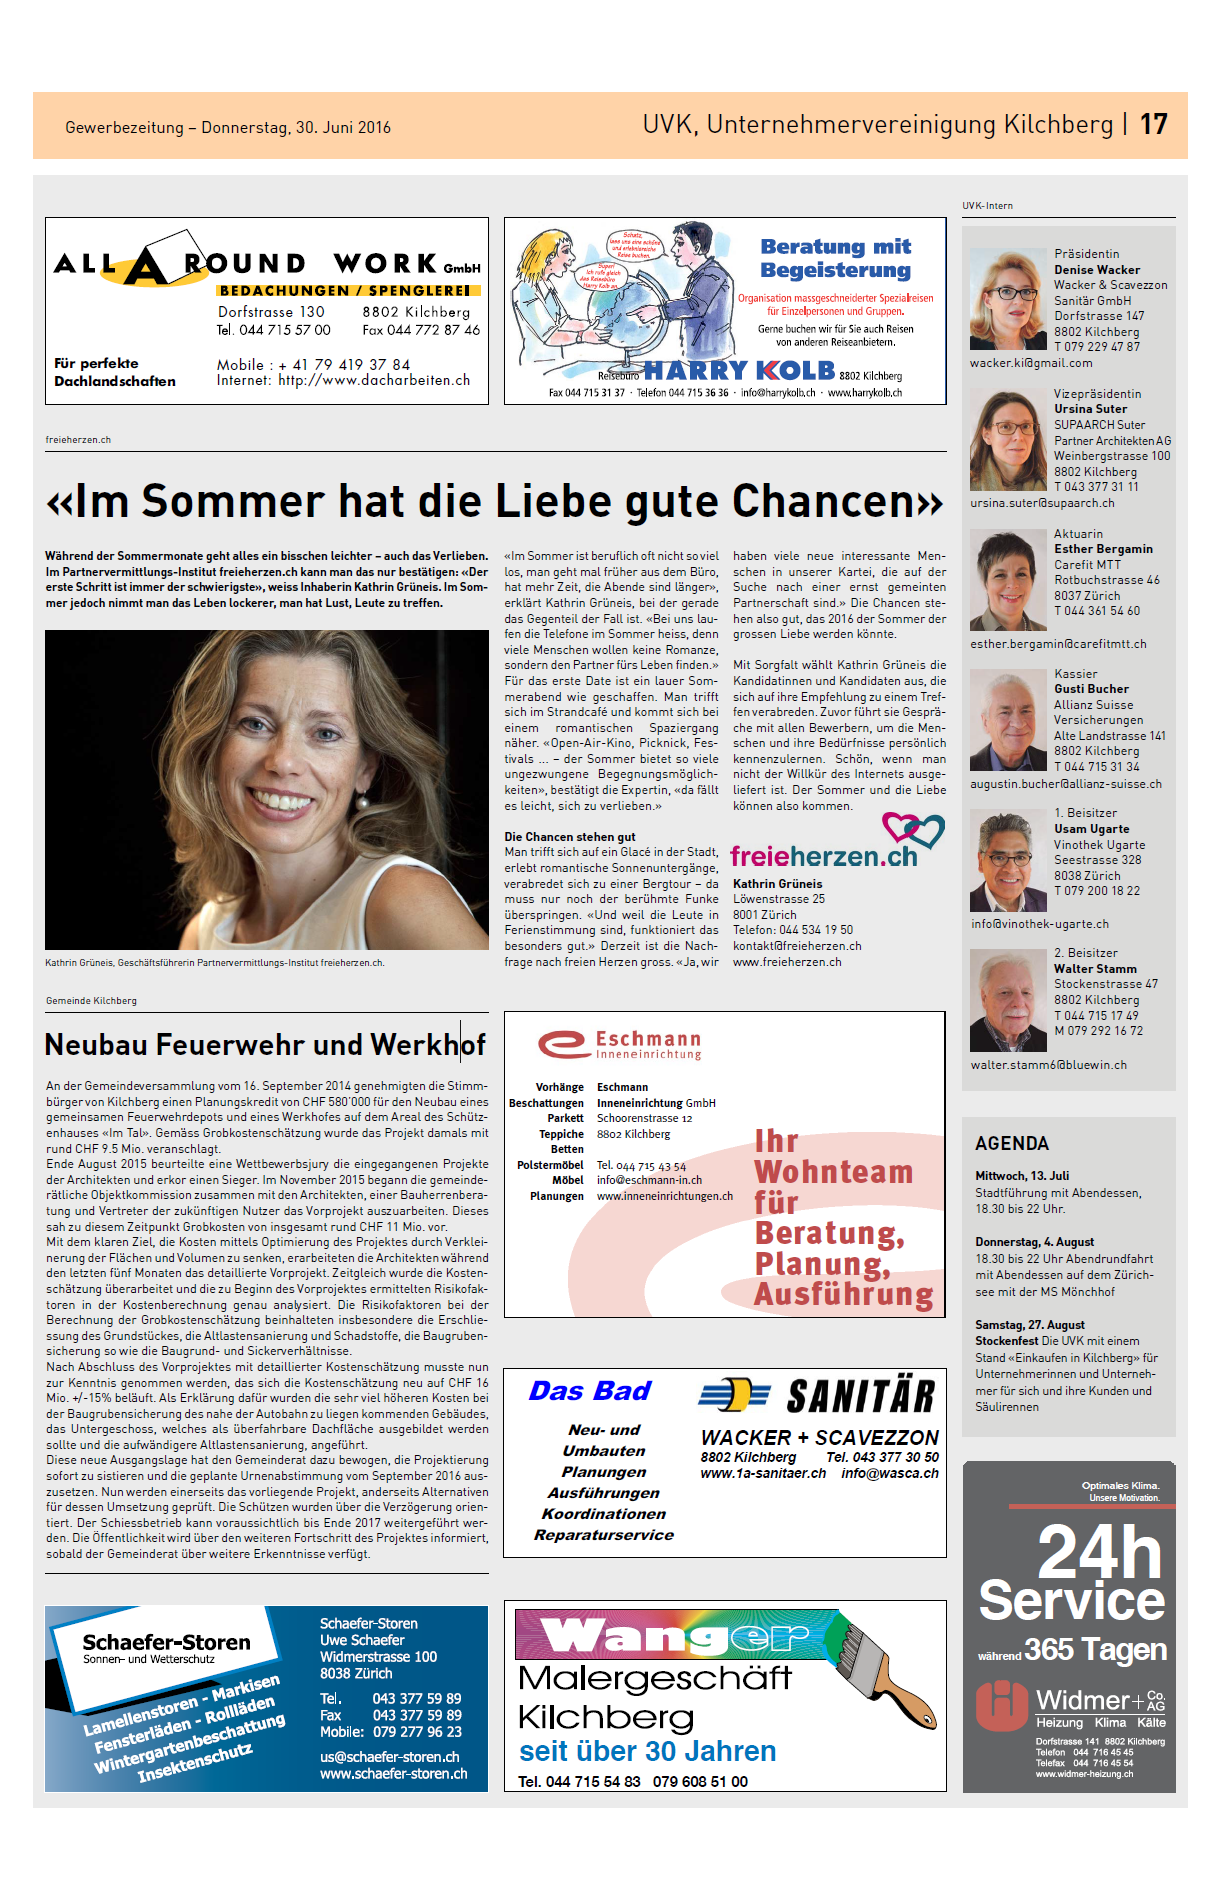 Zeitungsausschnitt von freieherzen.ch in der Gewerbezeitung vom Juni 2016